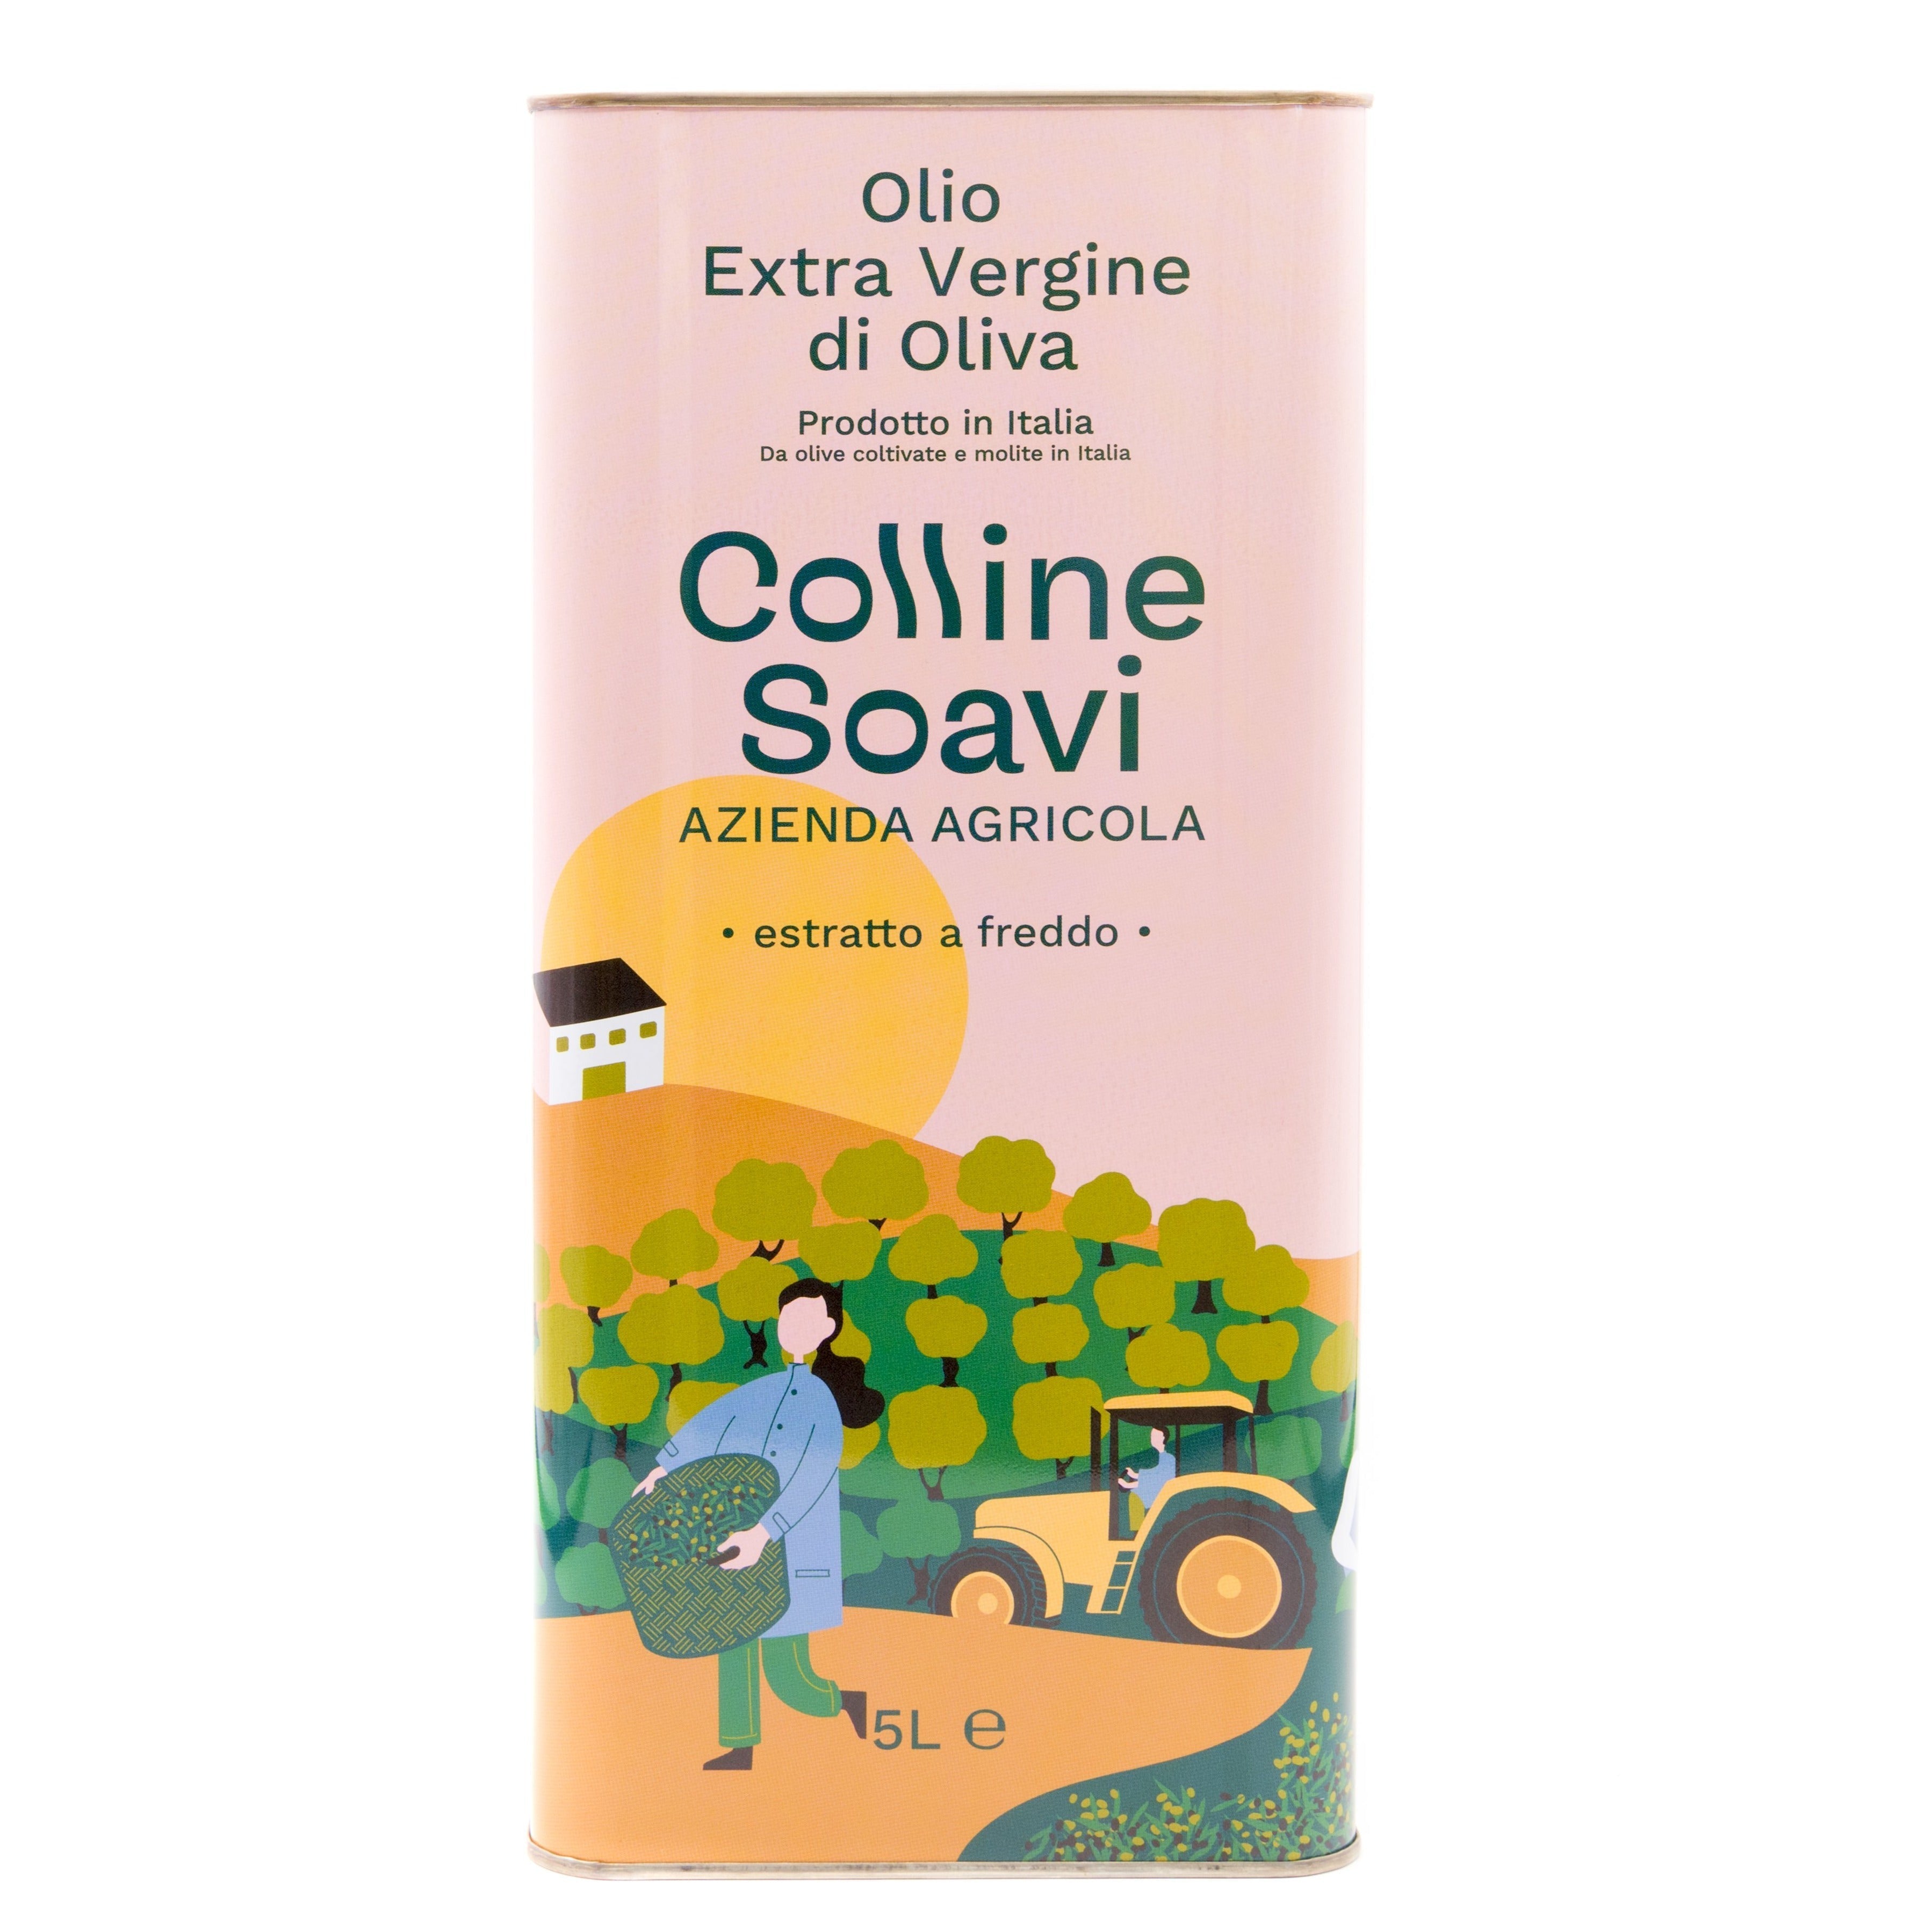 Olio Extra Vergine di Oliva Colline Soavi, Confezione di 2 Latte da 5L - 2023/24